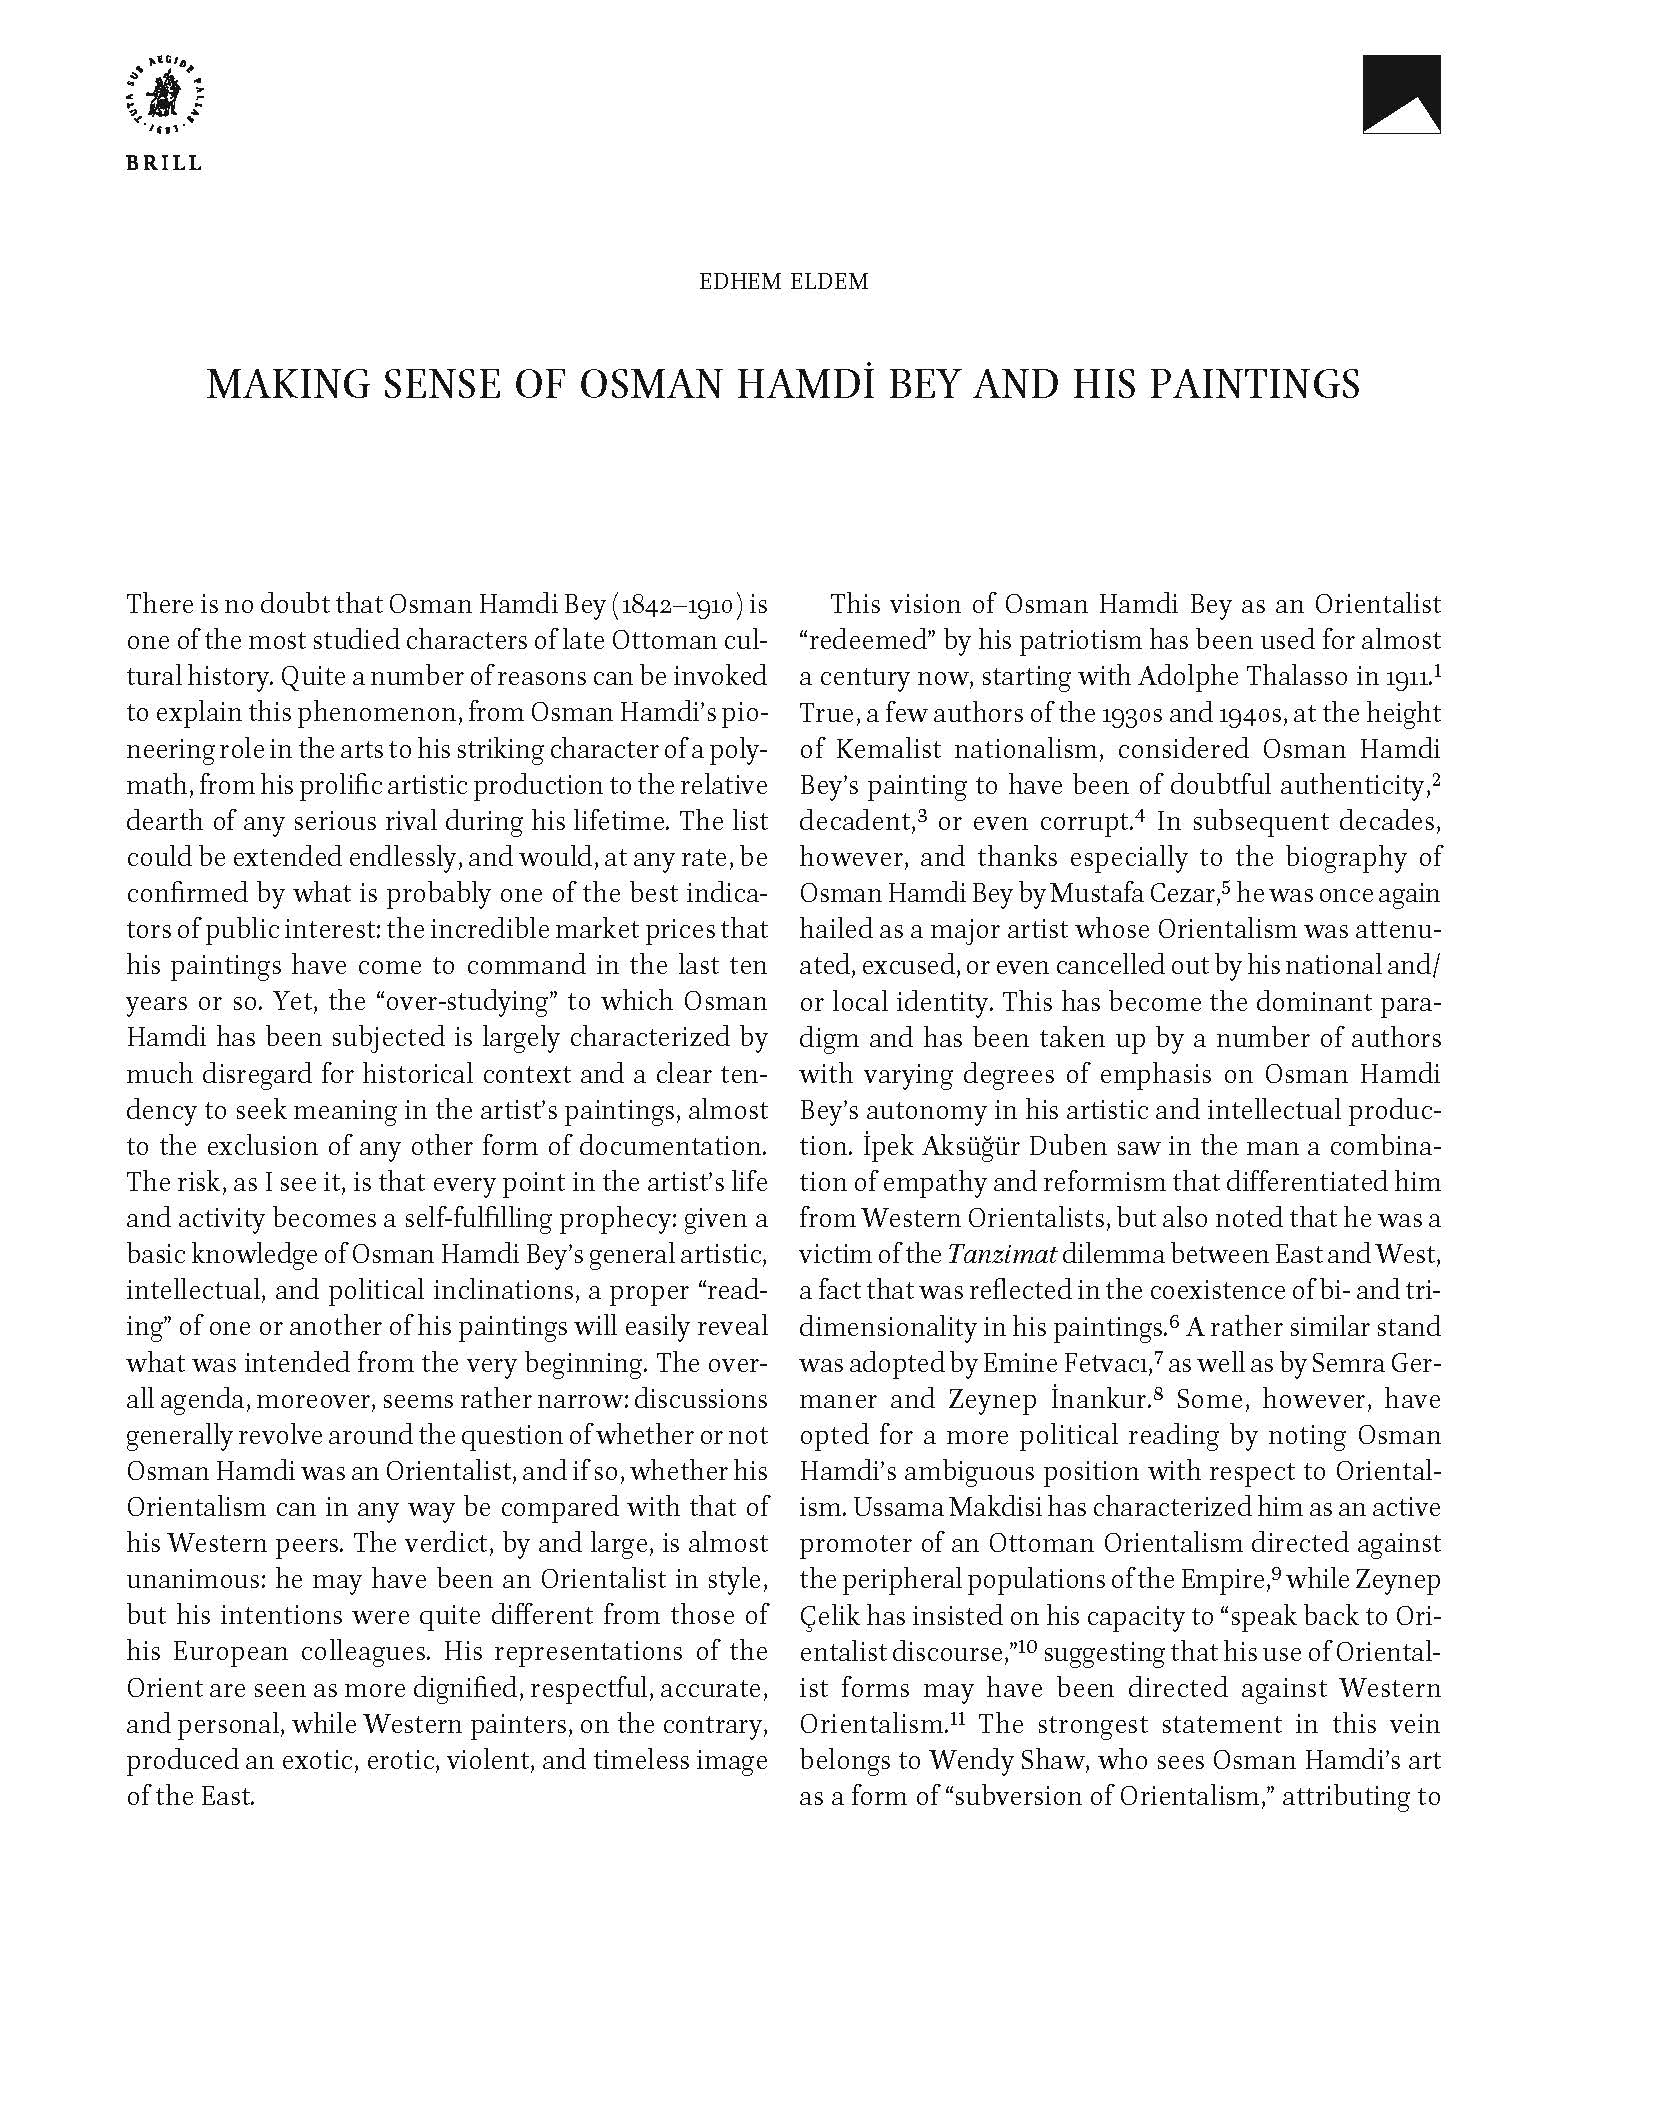 Making Sense of Osman Hamdi Bey and His Paintings